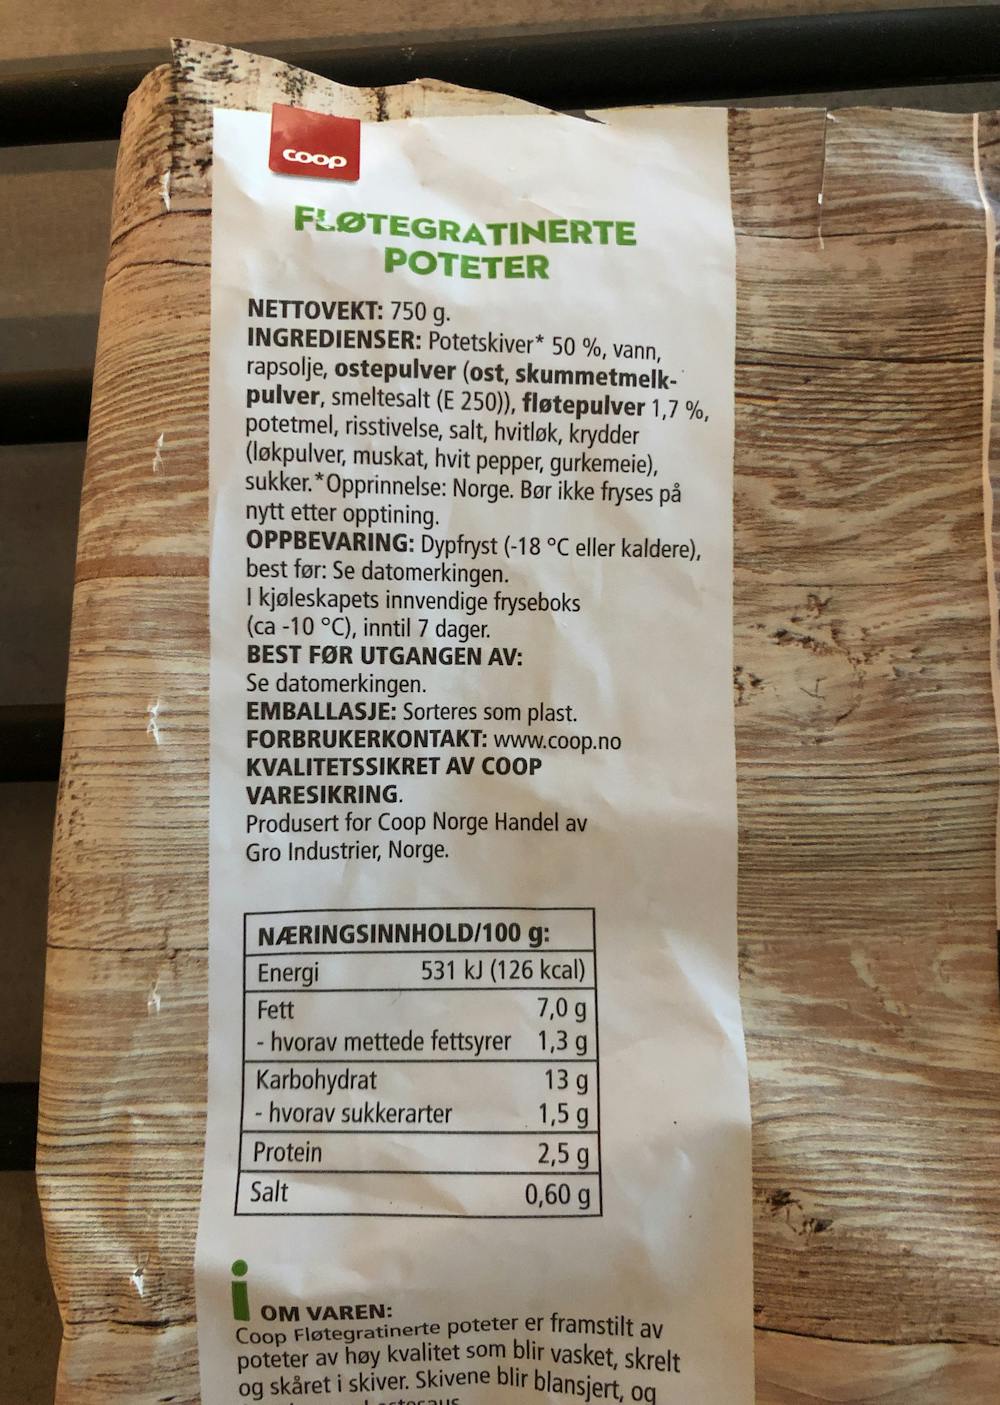 Ingredienslisten til Coop Fløtegratinerete poteter